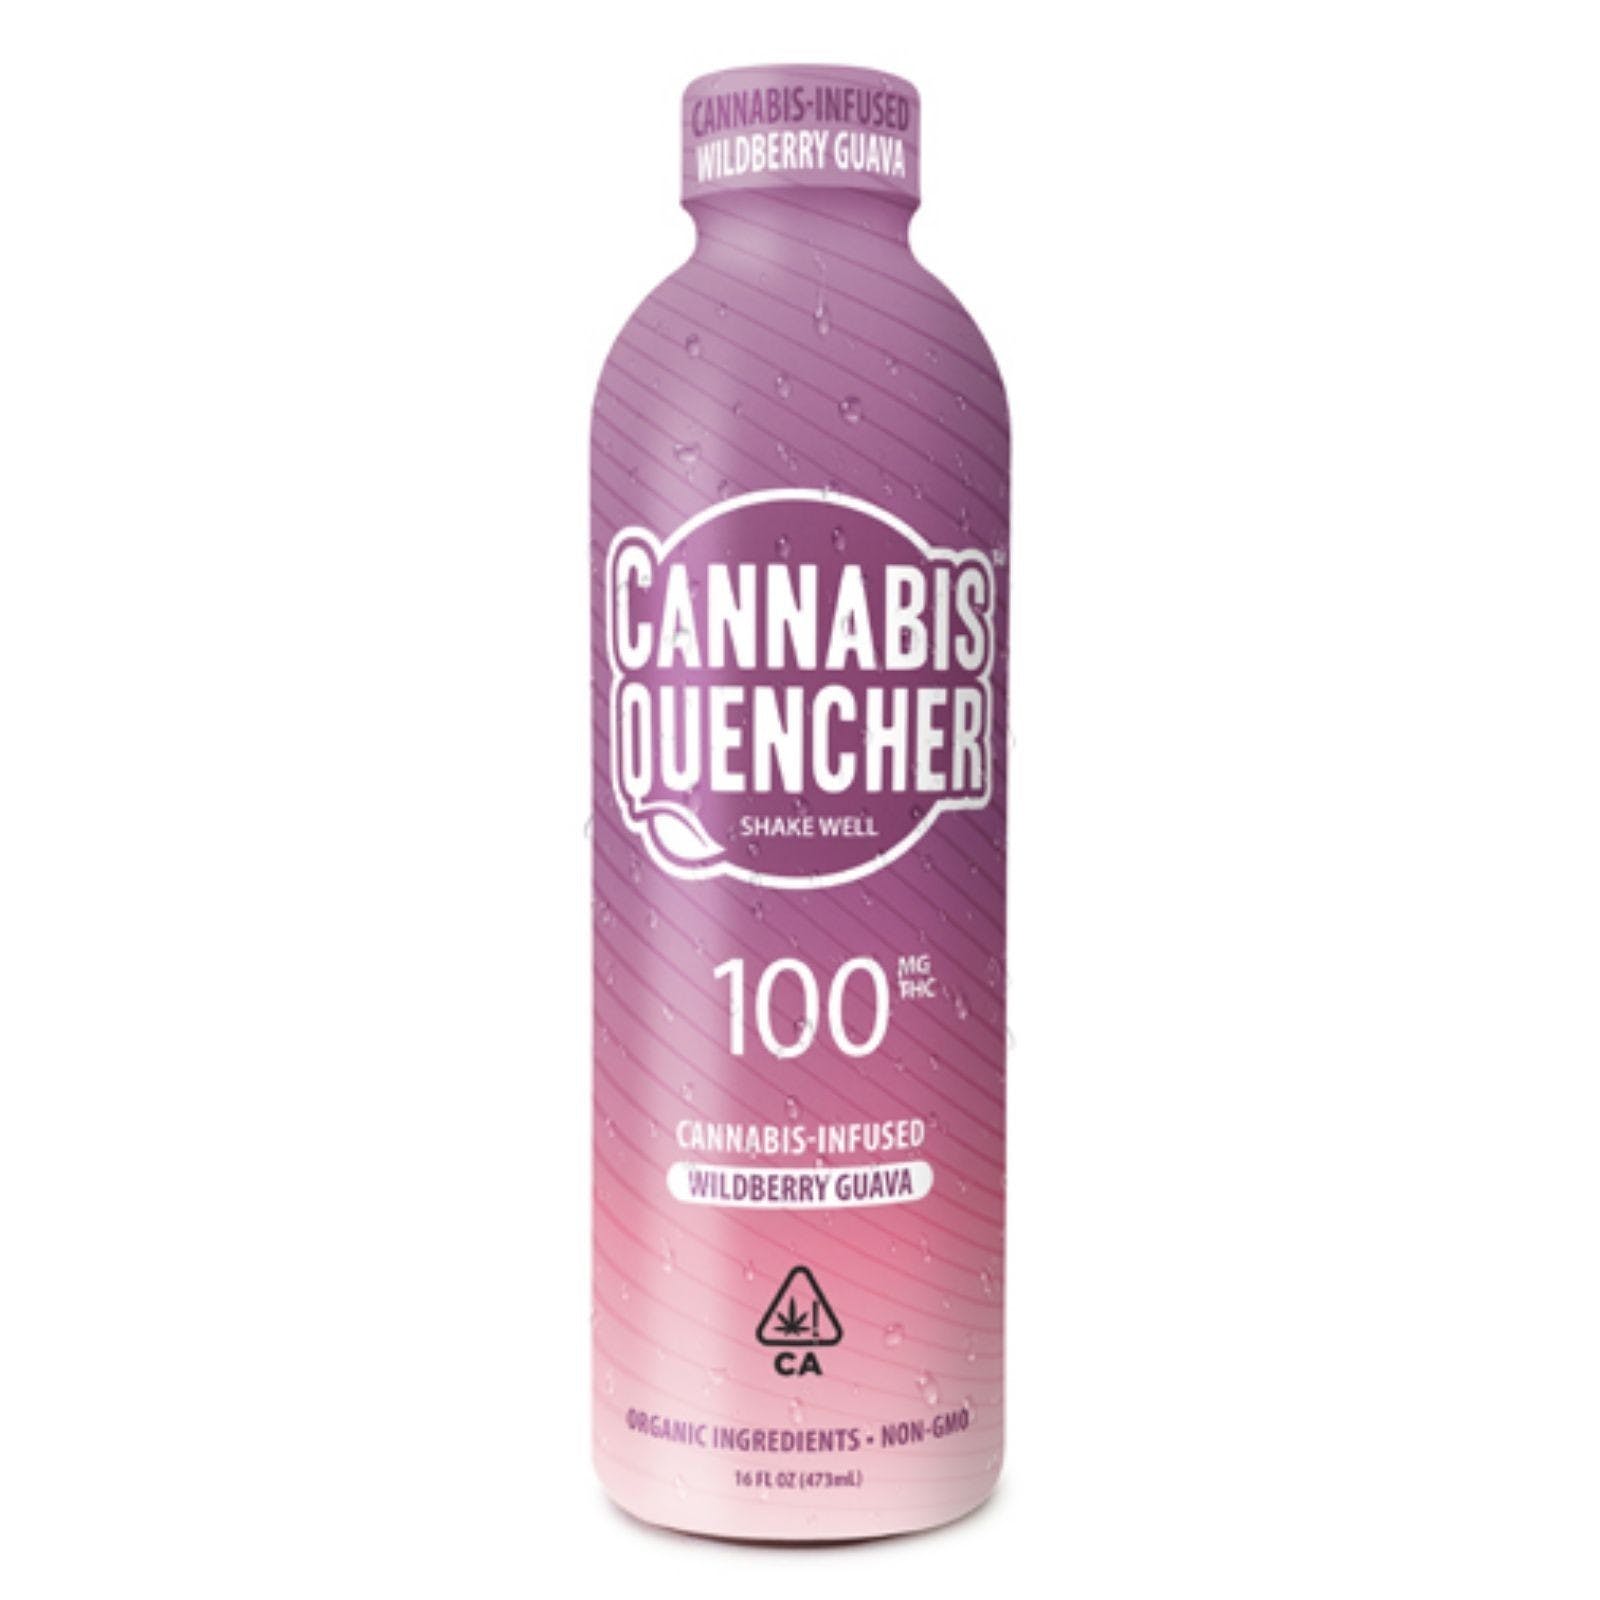 Cannabis Quencher- Wildberry Quava